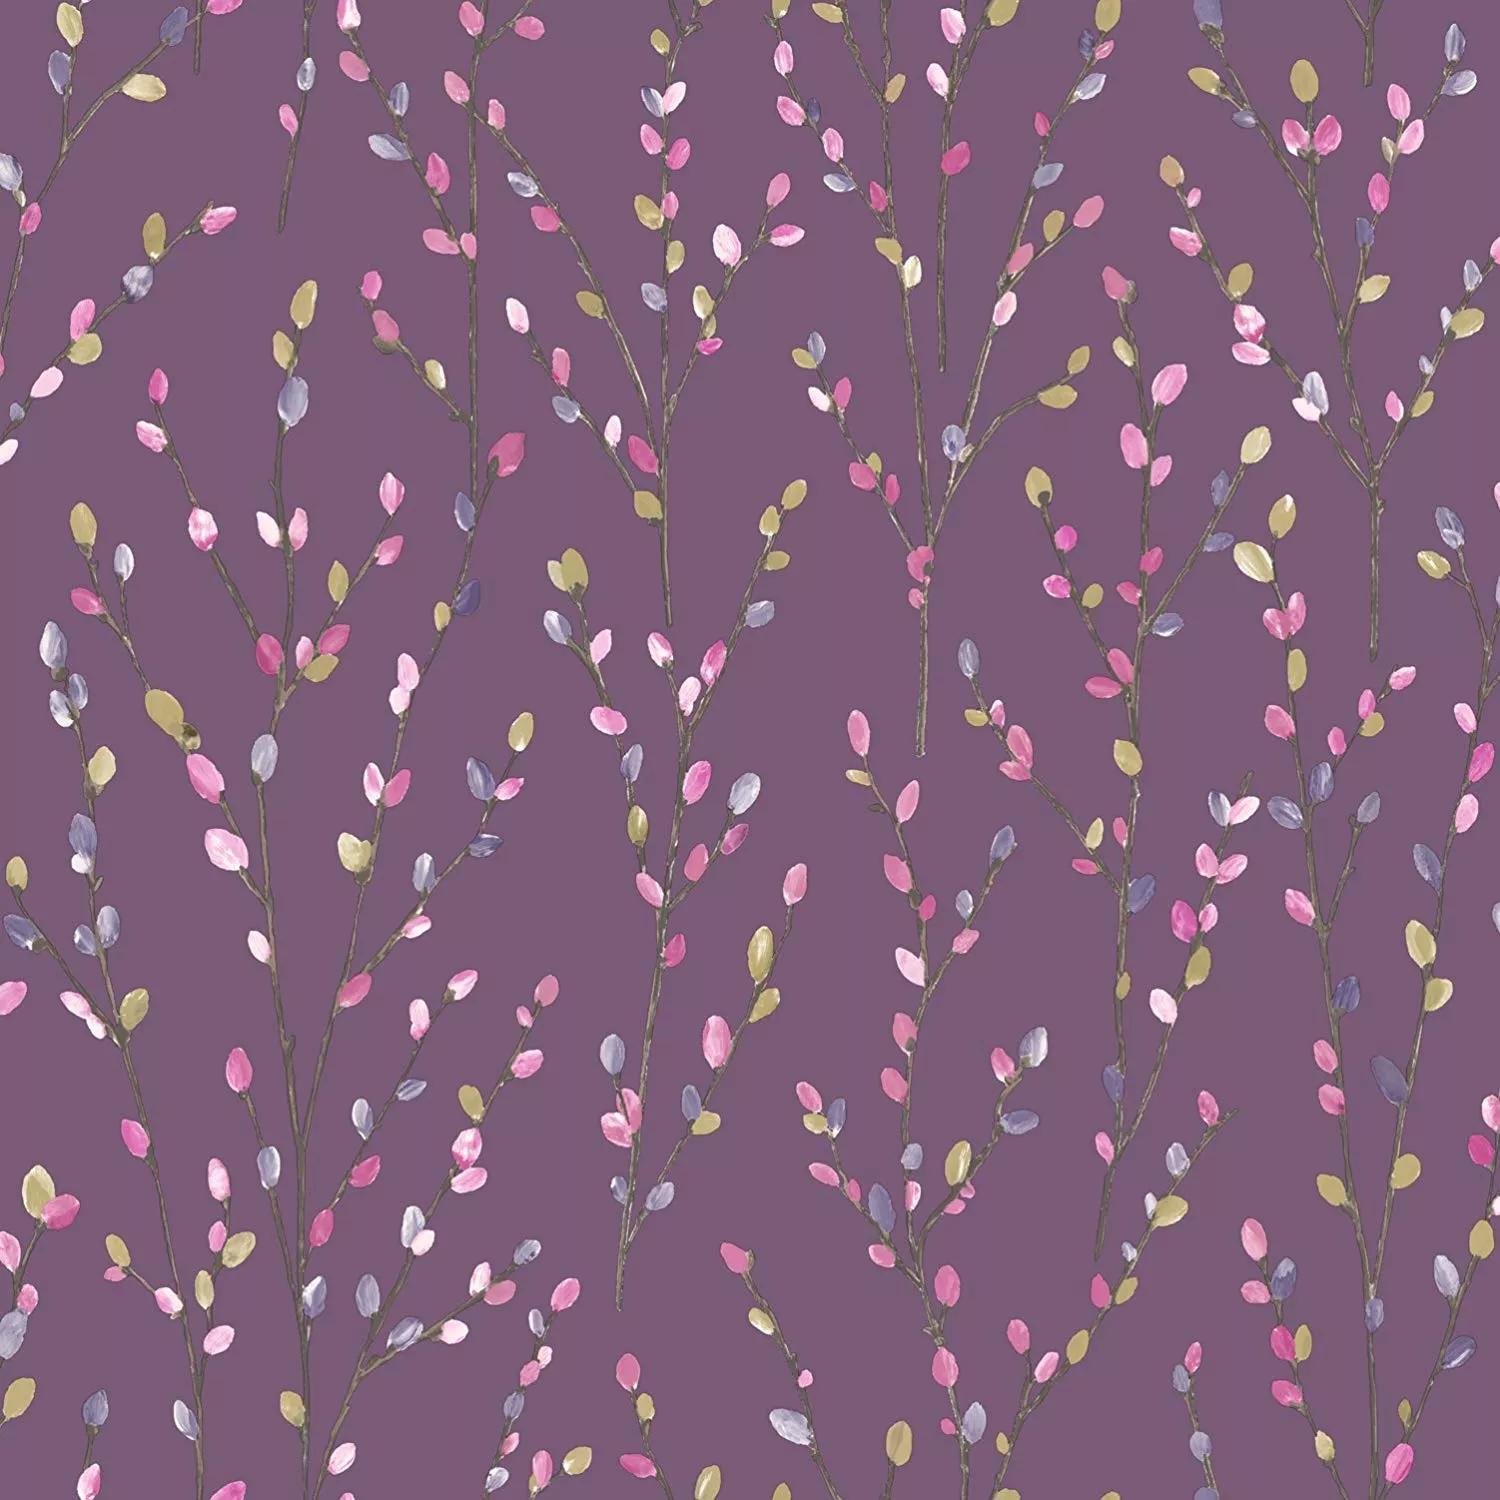 Fűzfaág mintás tapéta lila színben